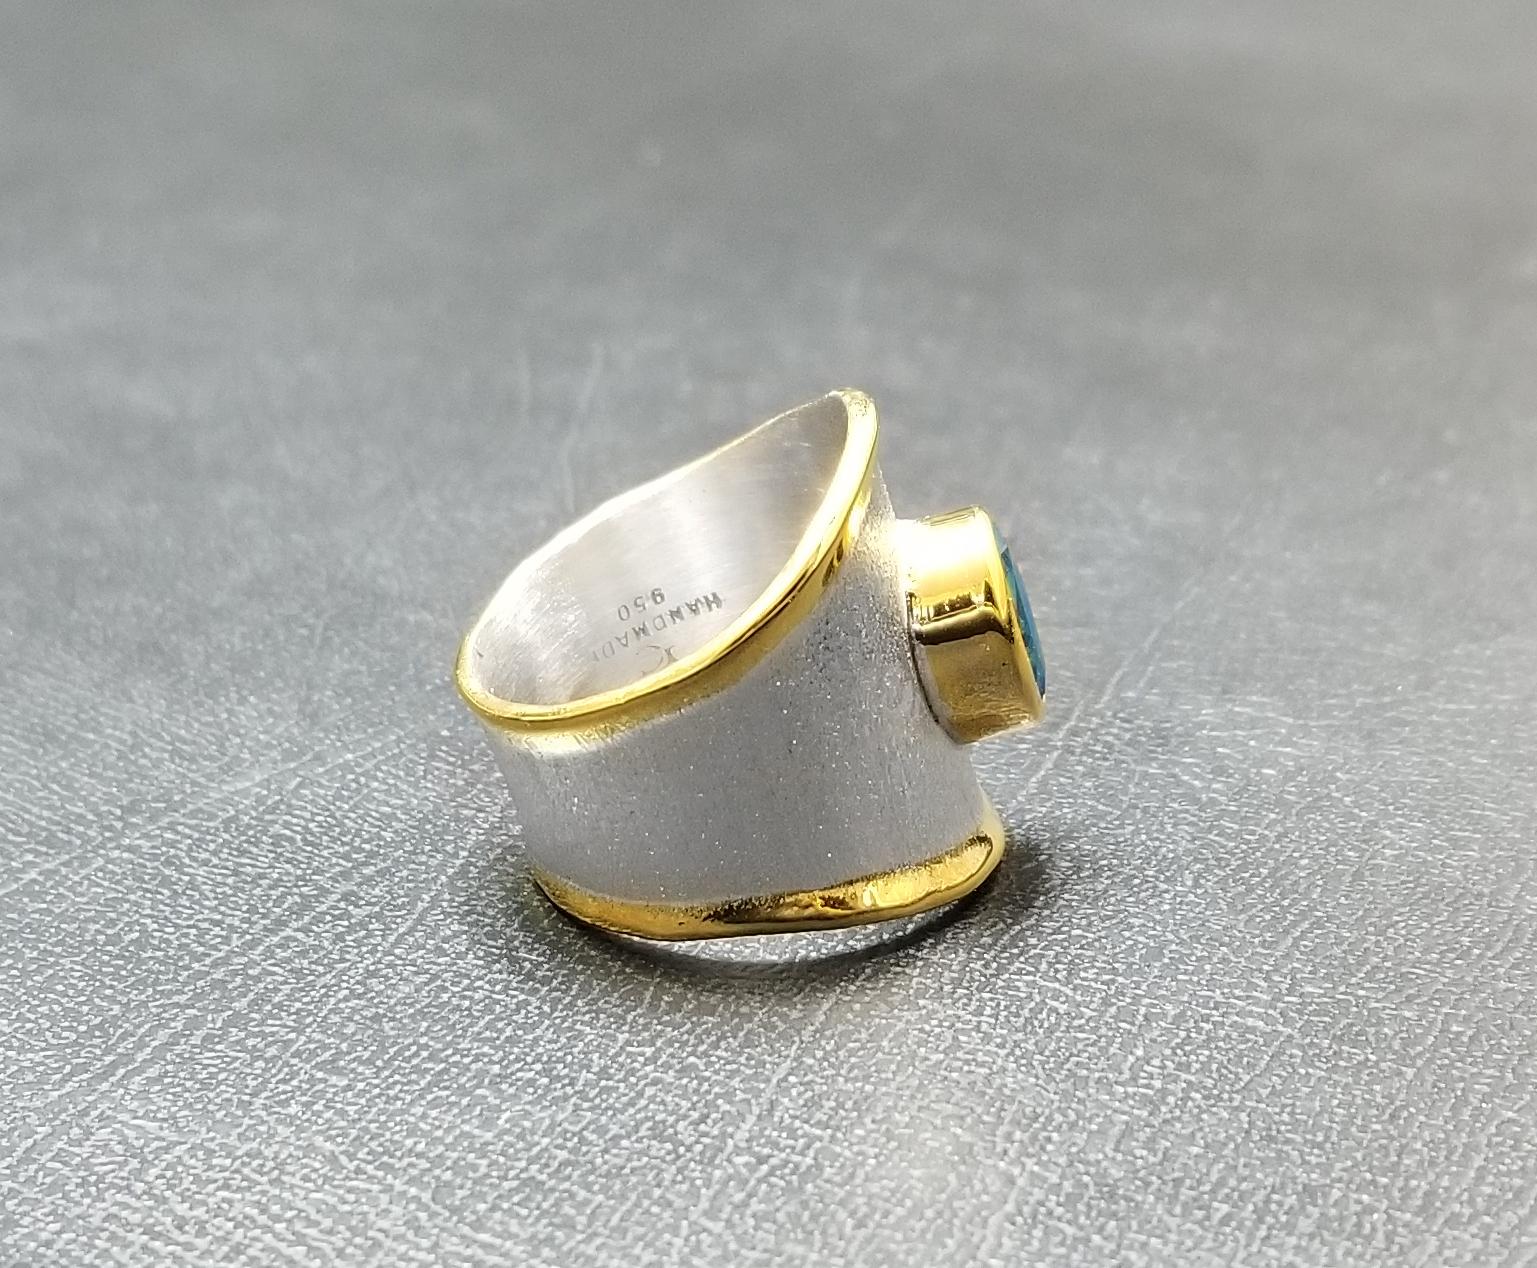 Yianni Creations 1.60 Carat Blue Topaz Ring in Fine Silver and 24 Karat Gold (Zeitgenössisch)